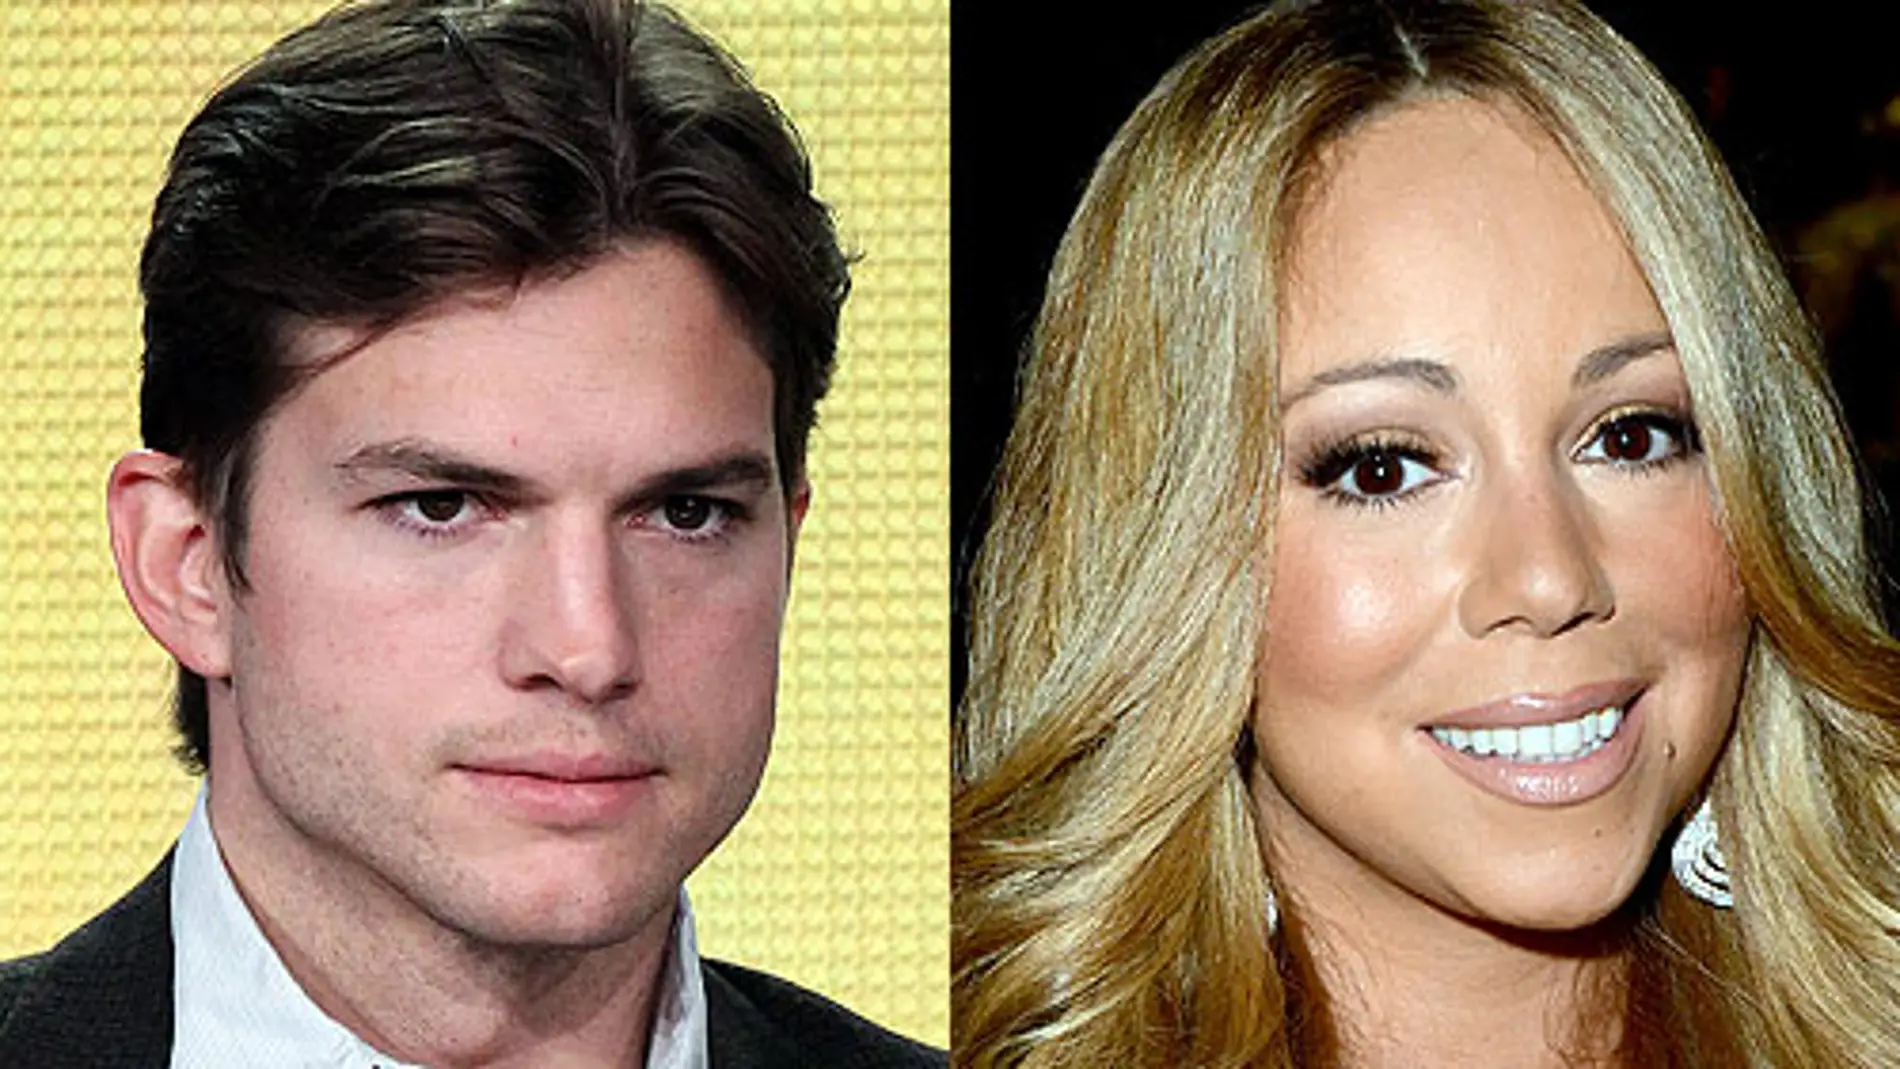 El actor Ashton Kutcher y la actriz Mariah Carey